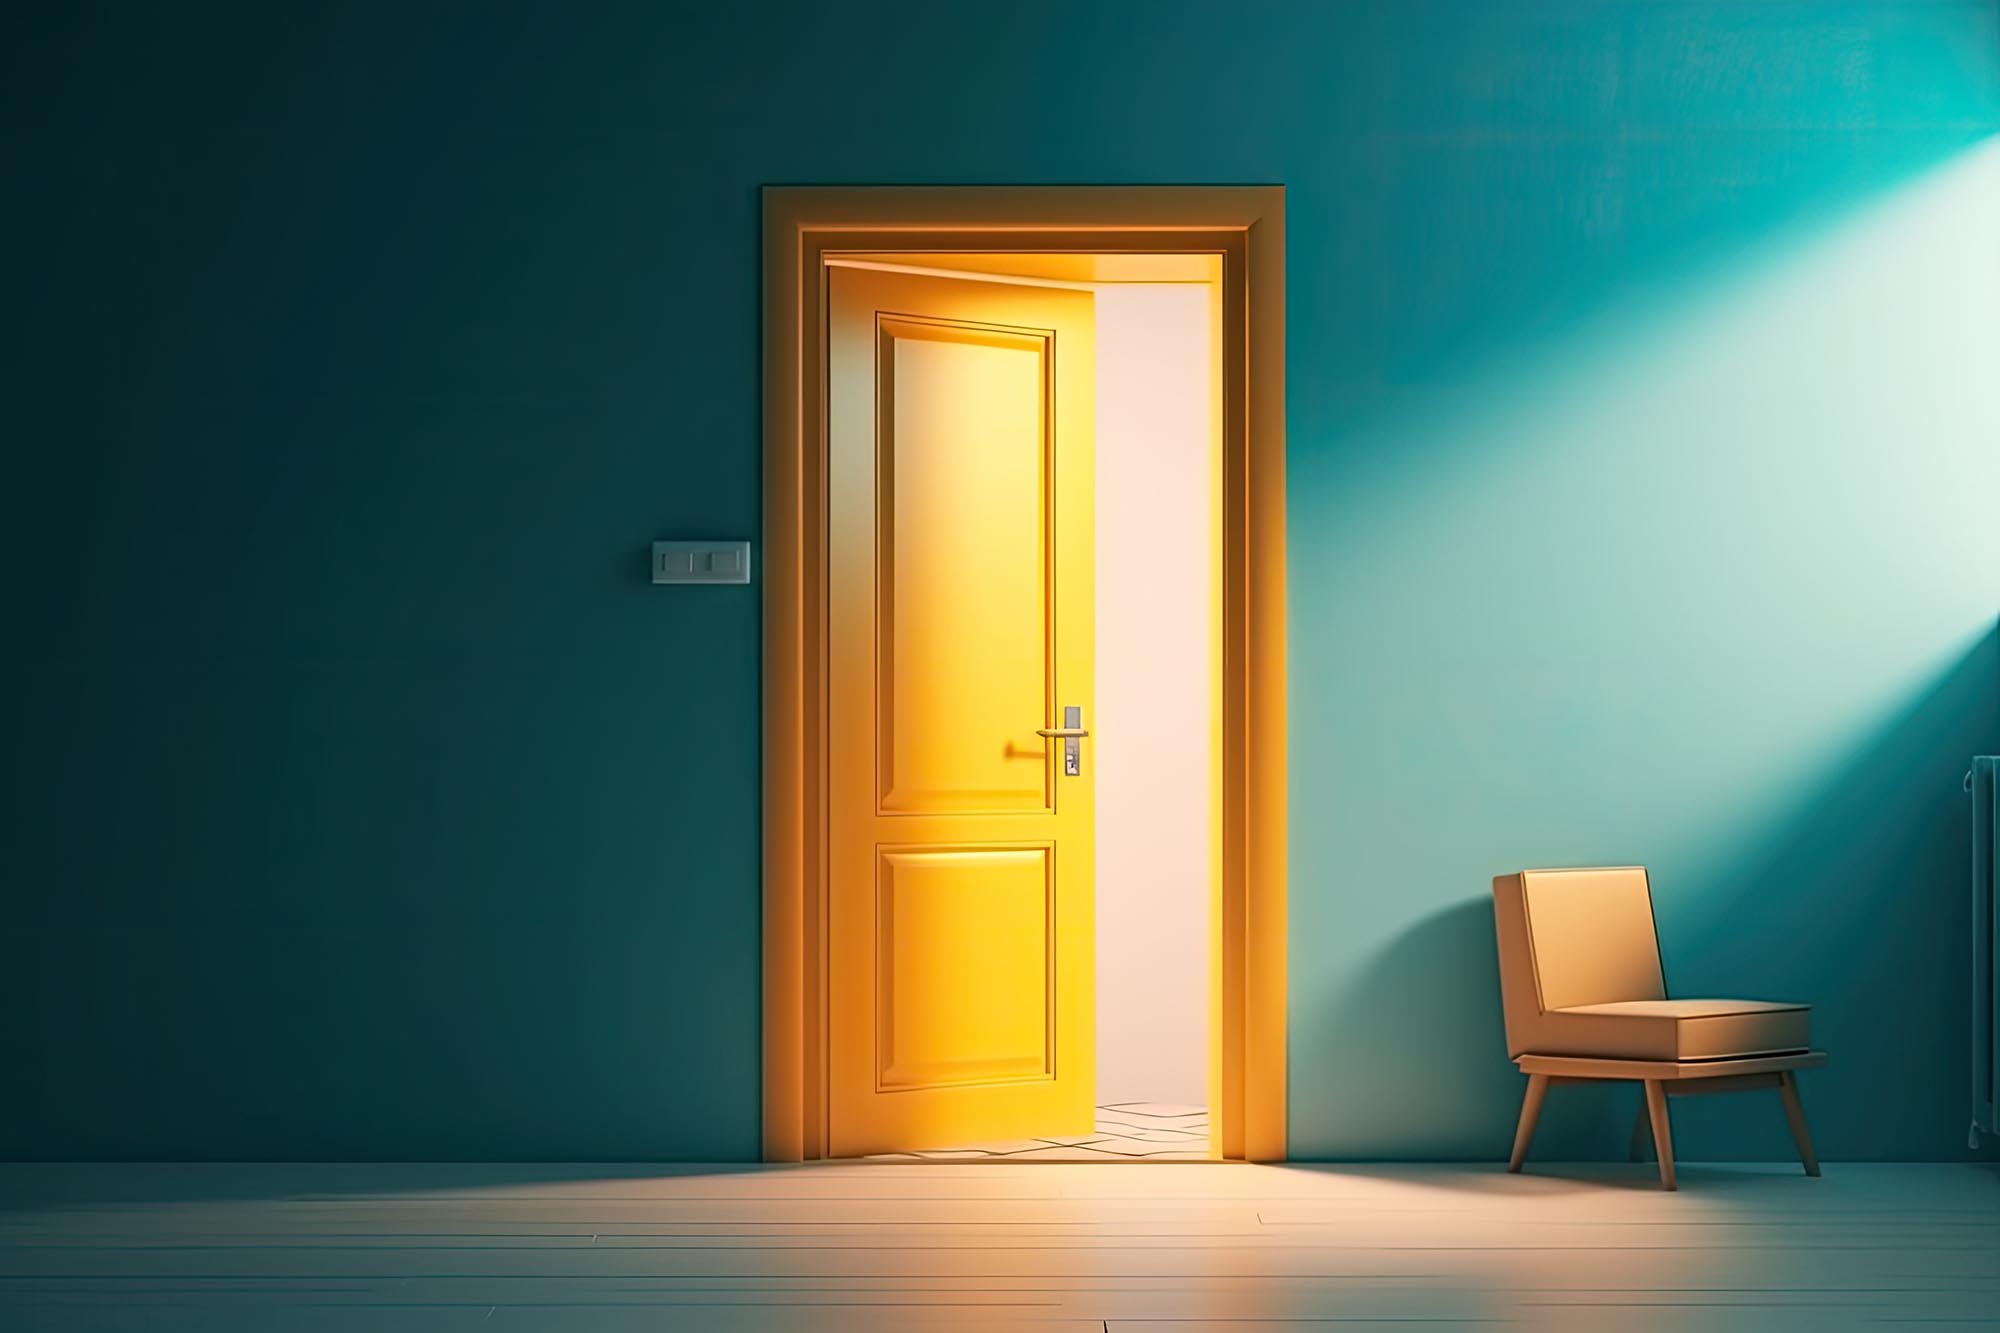 Slightly open yellow door in empty blue room with chair